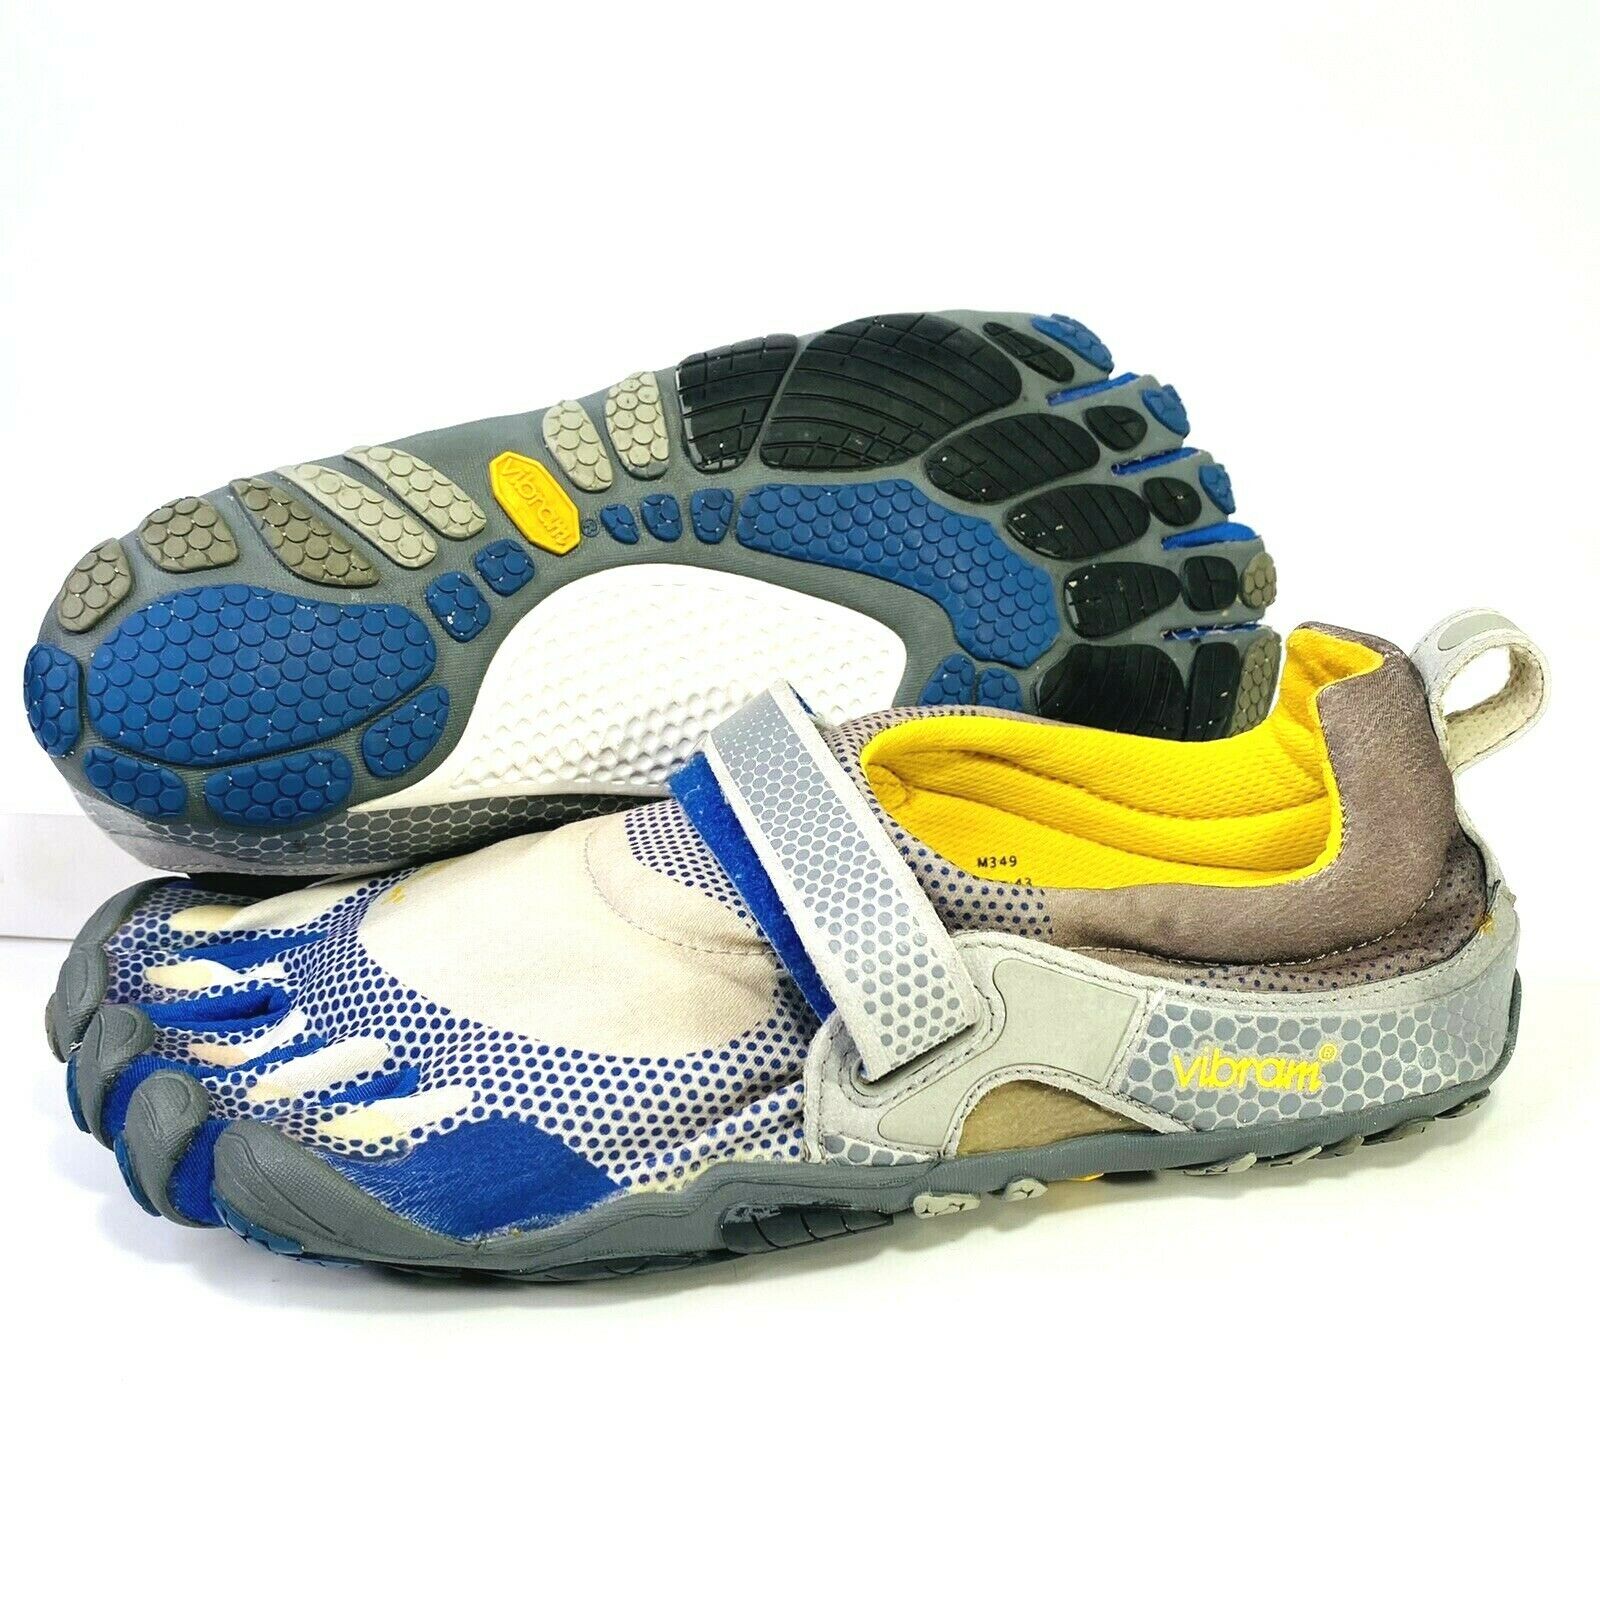 Vibram Bikila FiveFingers Barefoot Running Toe Shoes Men 43 9.5/10 Blue M349 EUC